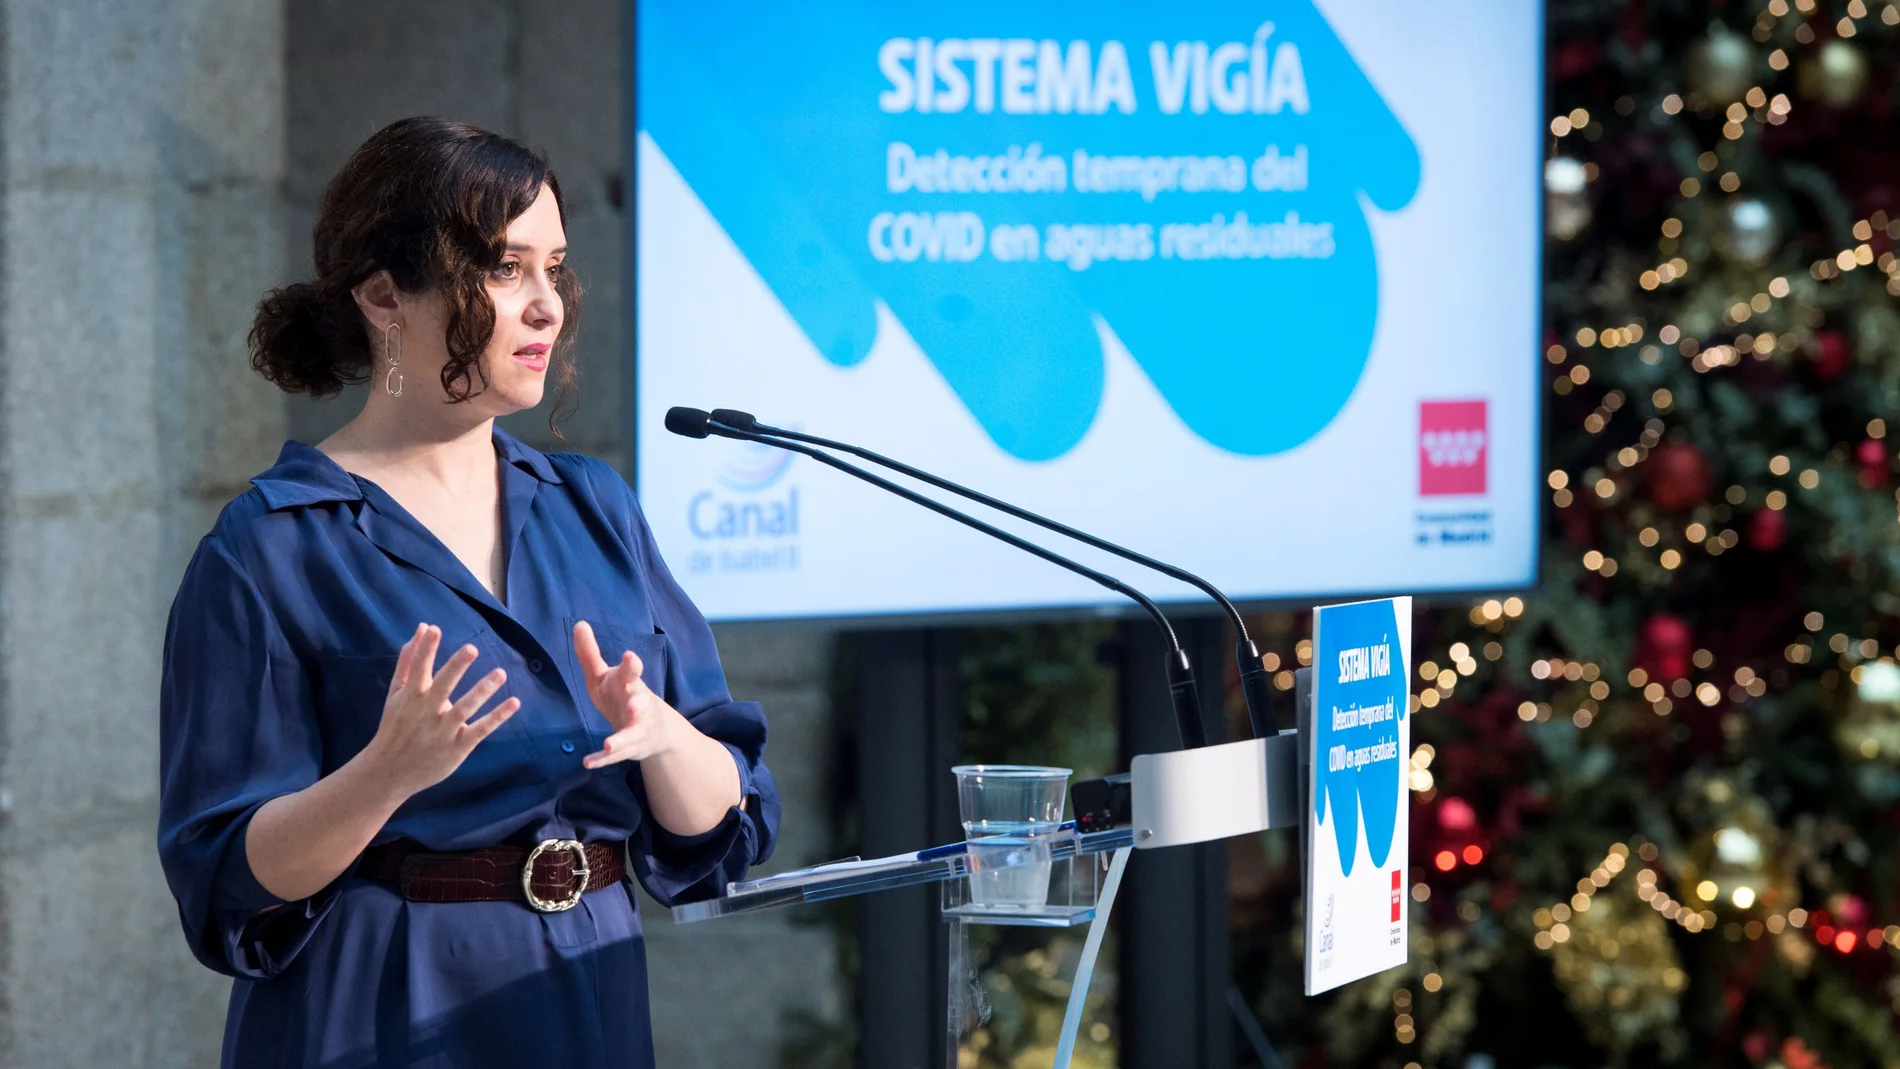 La presidenta de la Comunidad de Madrid, Isabel Díaz Ayuso, presenta el proyecto "Vigía" de detección temprana de COVID en aguas residuales este viernes en Madrid.